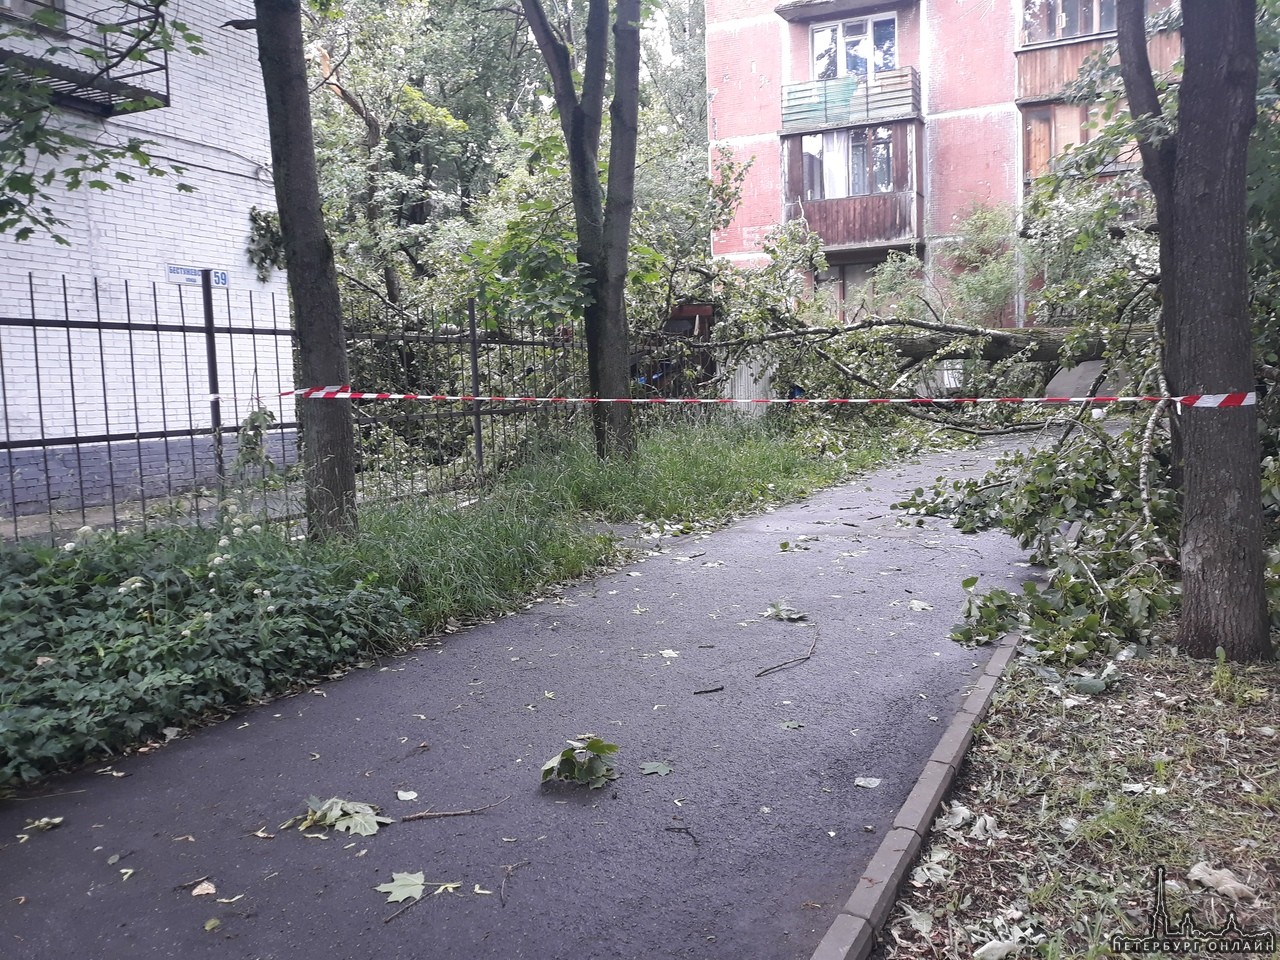 Полицейский участок на Бестужевской 59 накрыло тополем. Ко входу не подойти. Рядом оборвало провода.